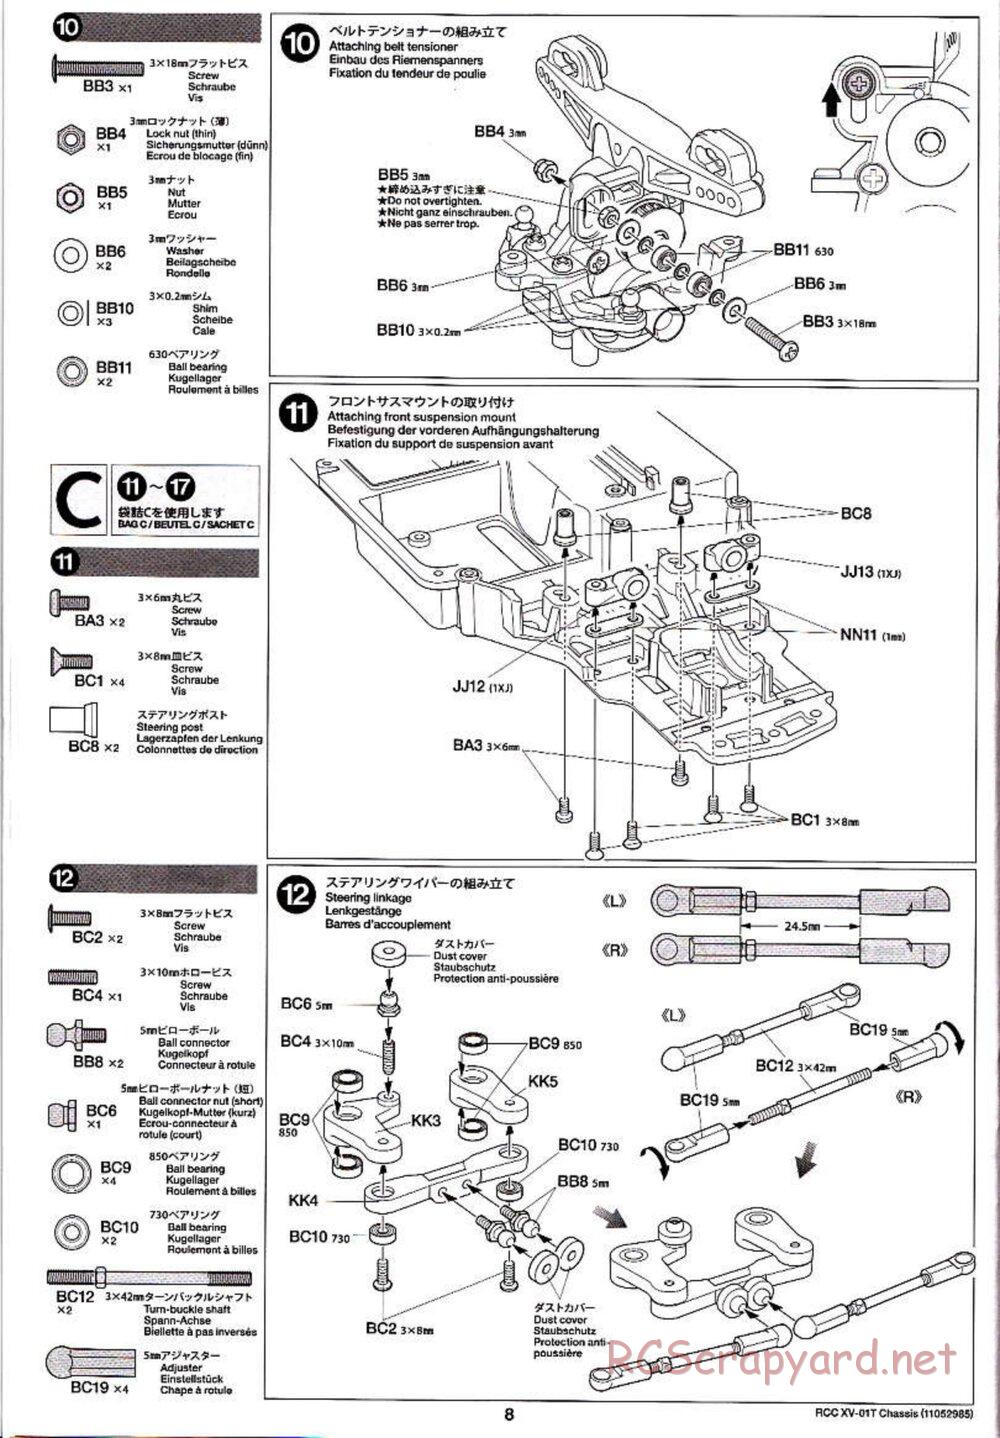 Tamiya - XV-01T Chassis - Manual - Page 8